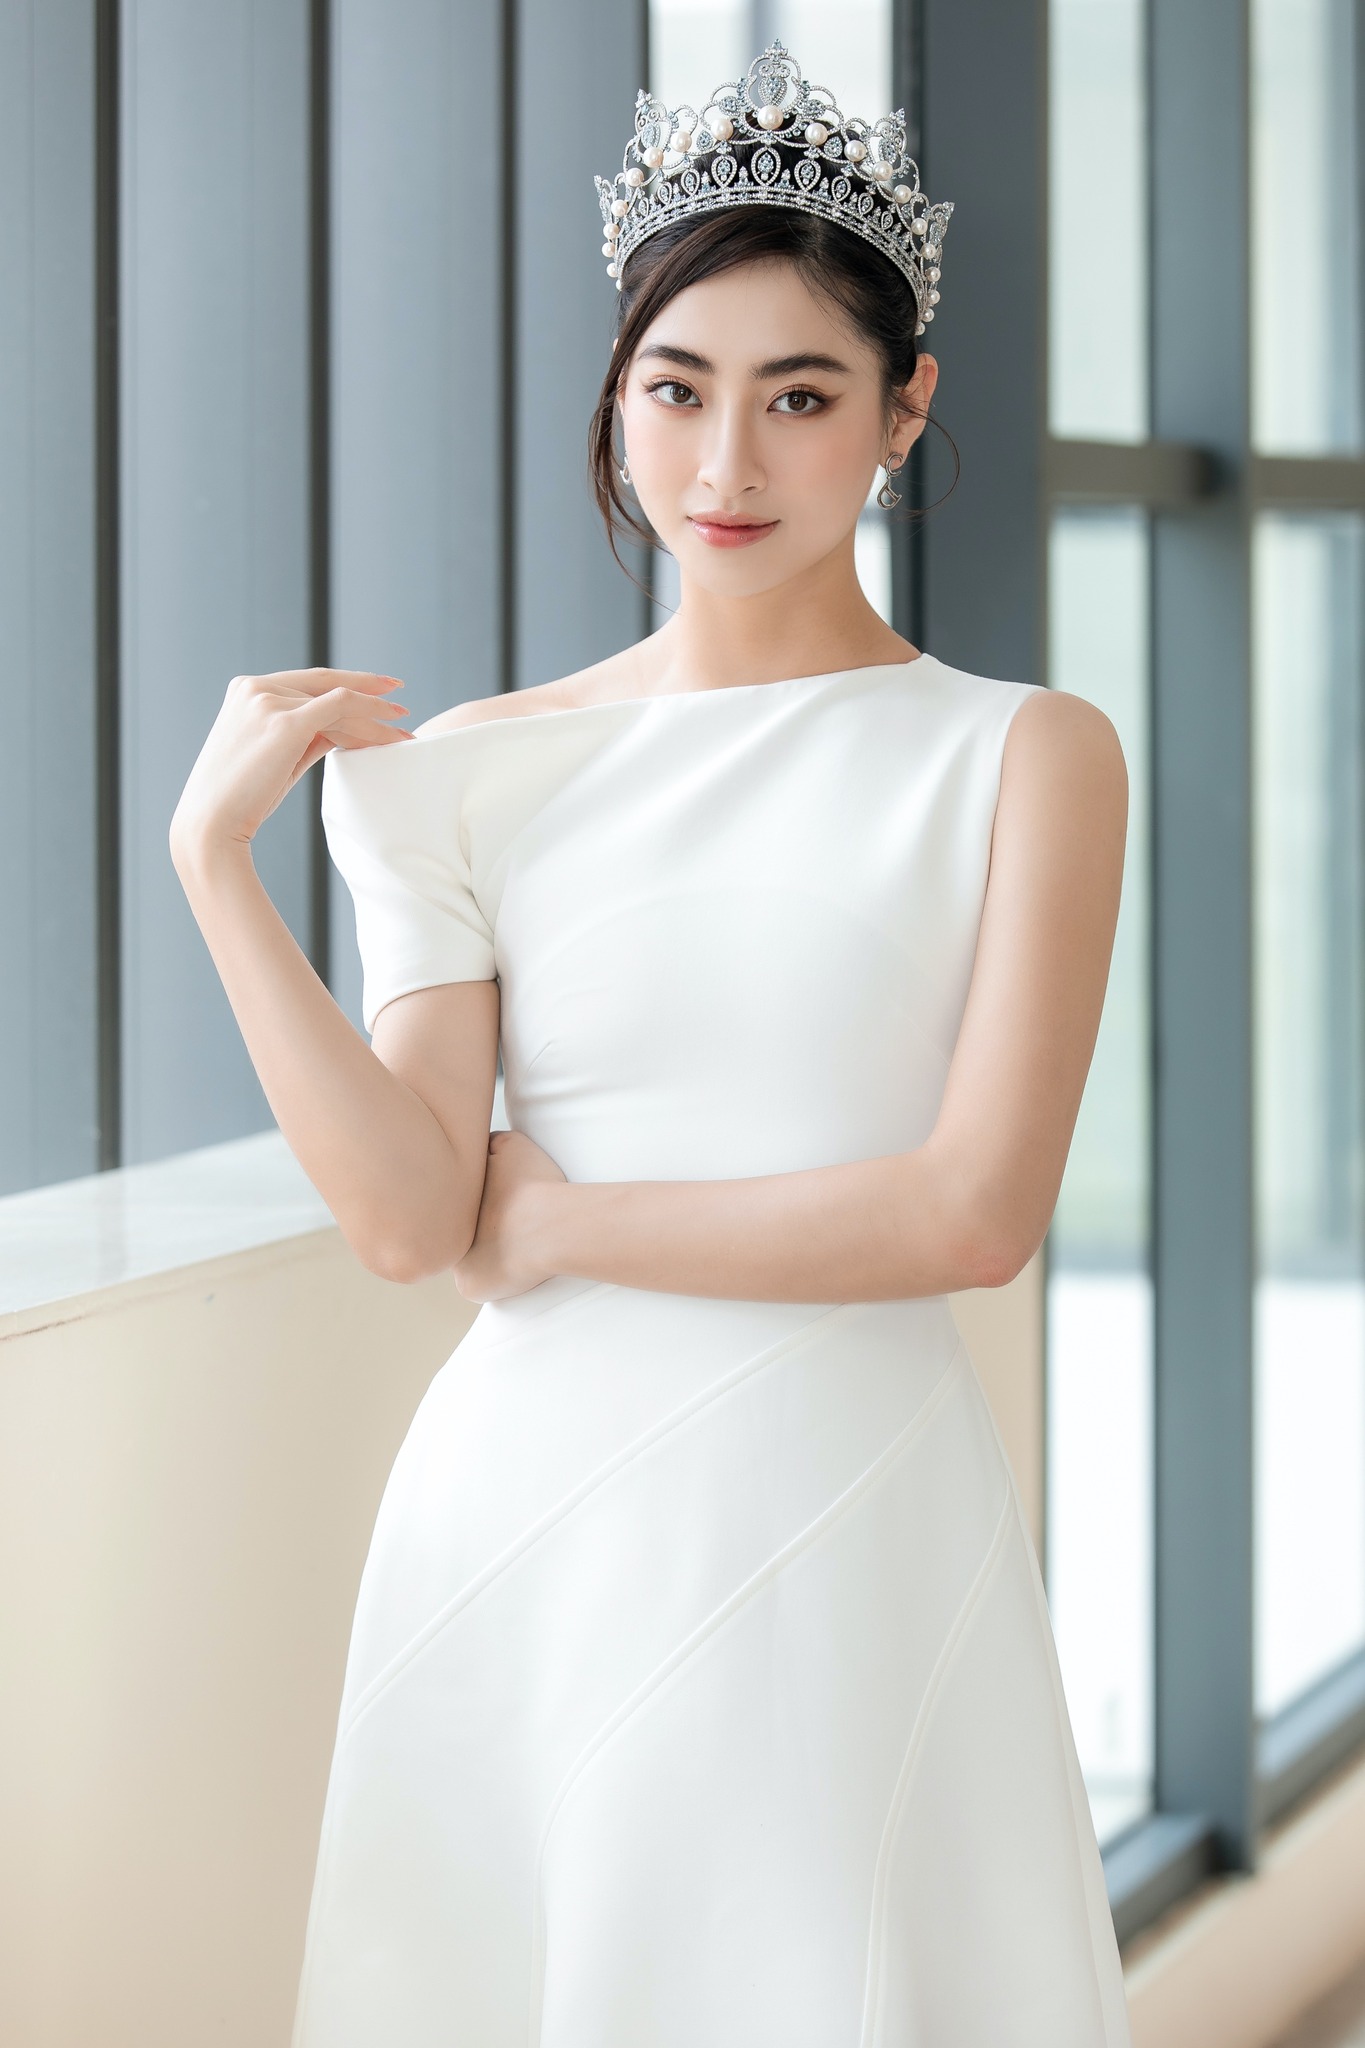 Lương Thùy Linh Miss World Vietnam 2019: “Tôi không gồng mình để giữ tên tuổi” - Ảnh 9.